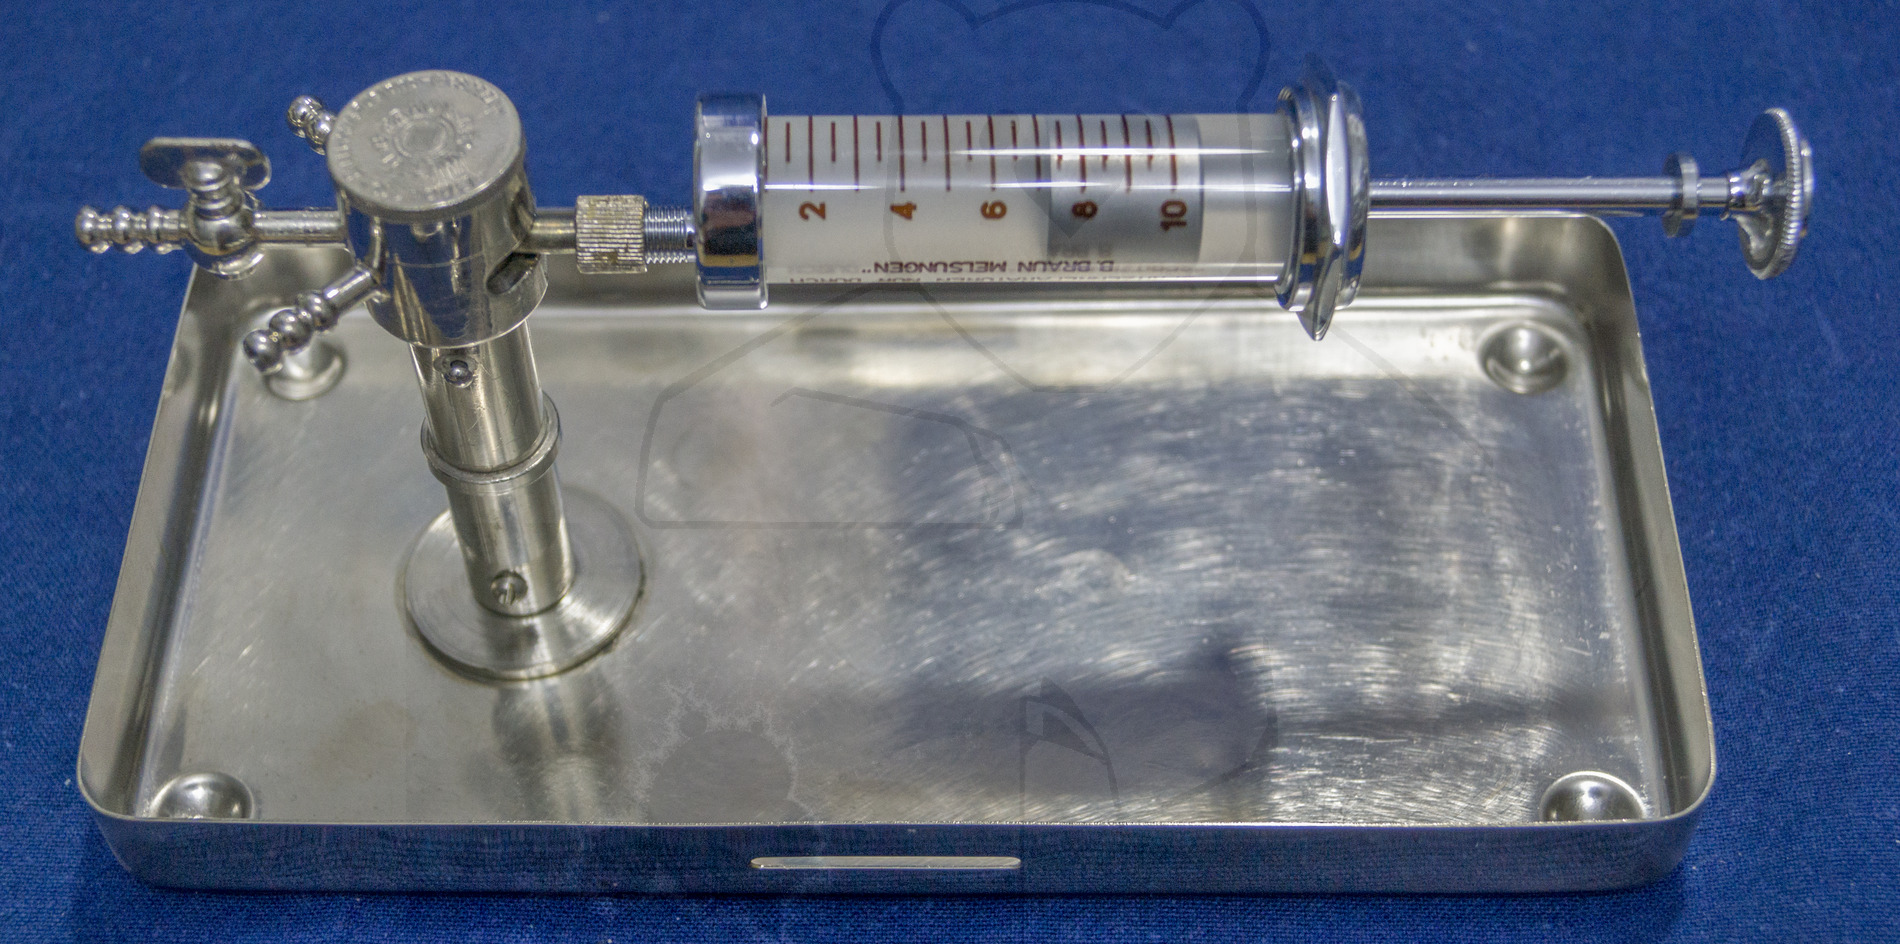 Set zur direkten Bluttransfusion, ca. 1940, Aufgesetzte Transferspritze mit Drei-Wege-Verteiler, Ansicht von schräg oben